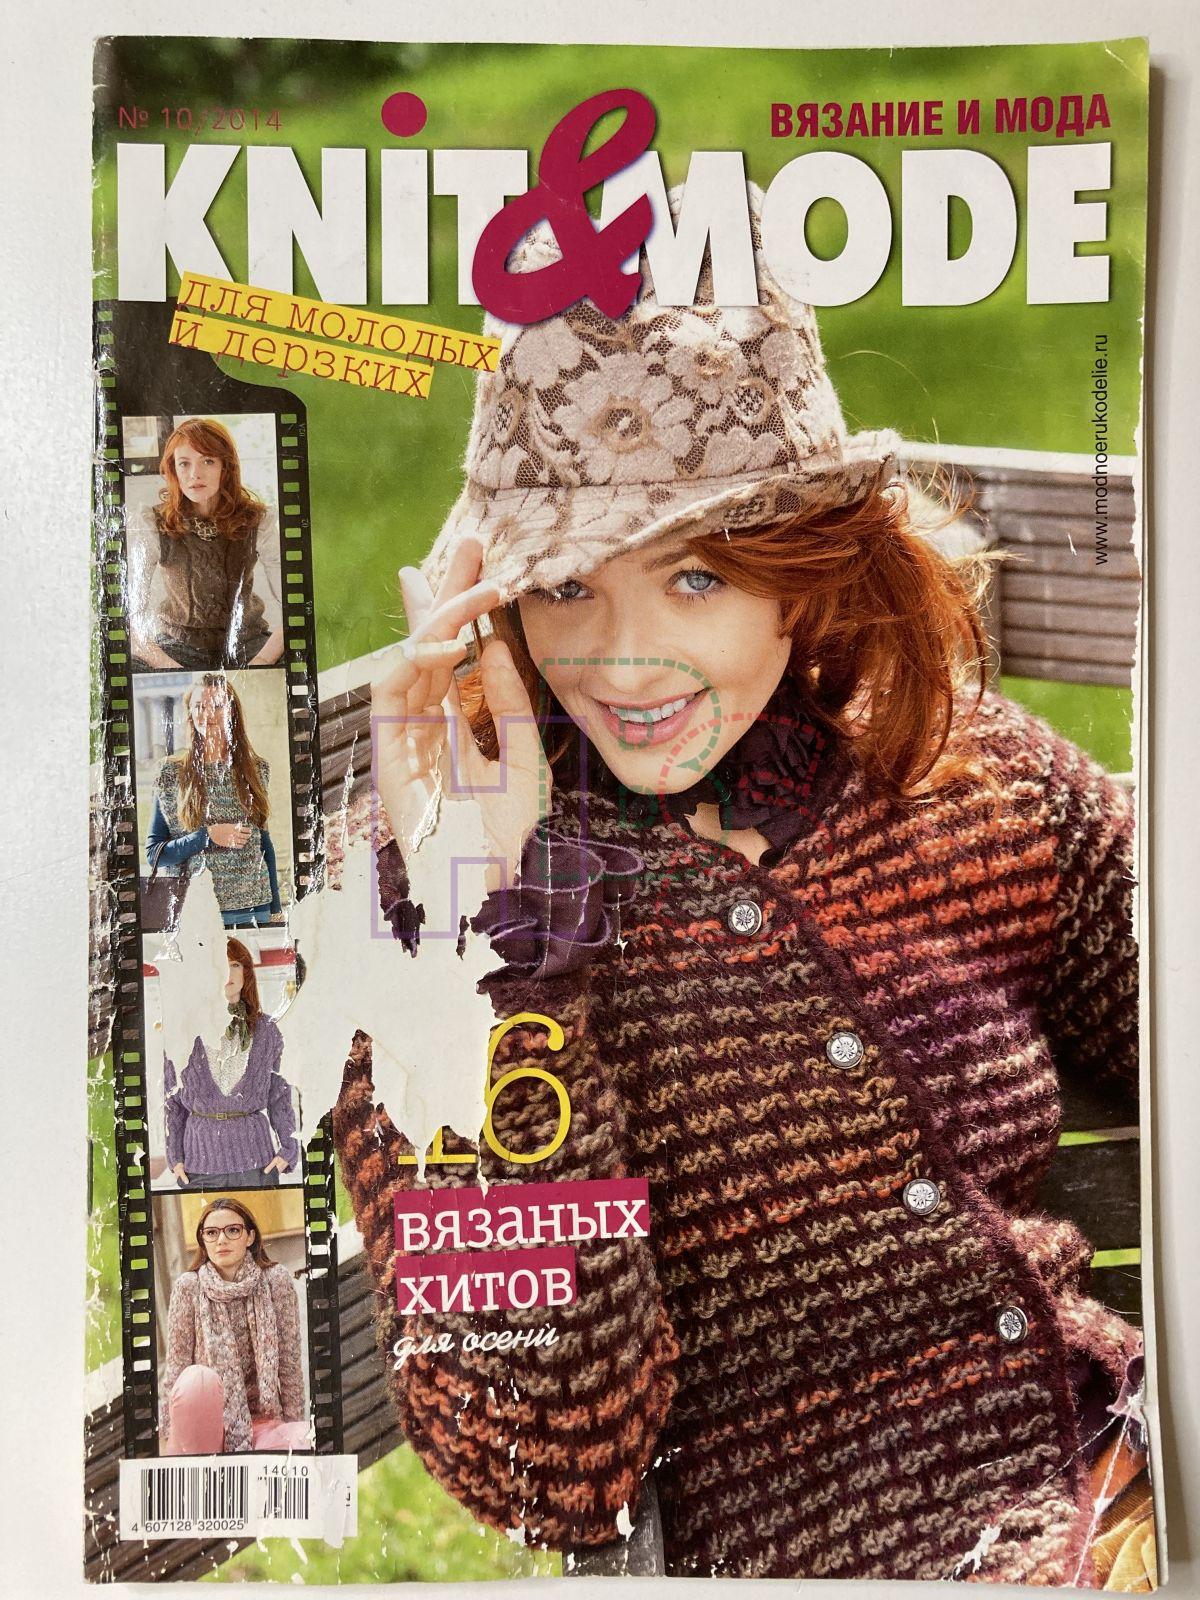 Knit журналы. Журнал вязание. Журнал Knit Mode по вязанию. Журнал Mode. Книт мод вязание.